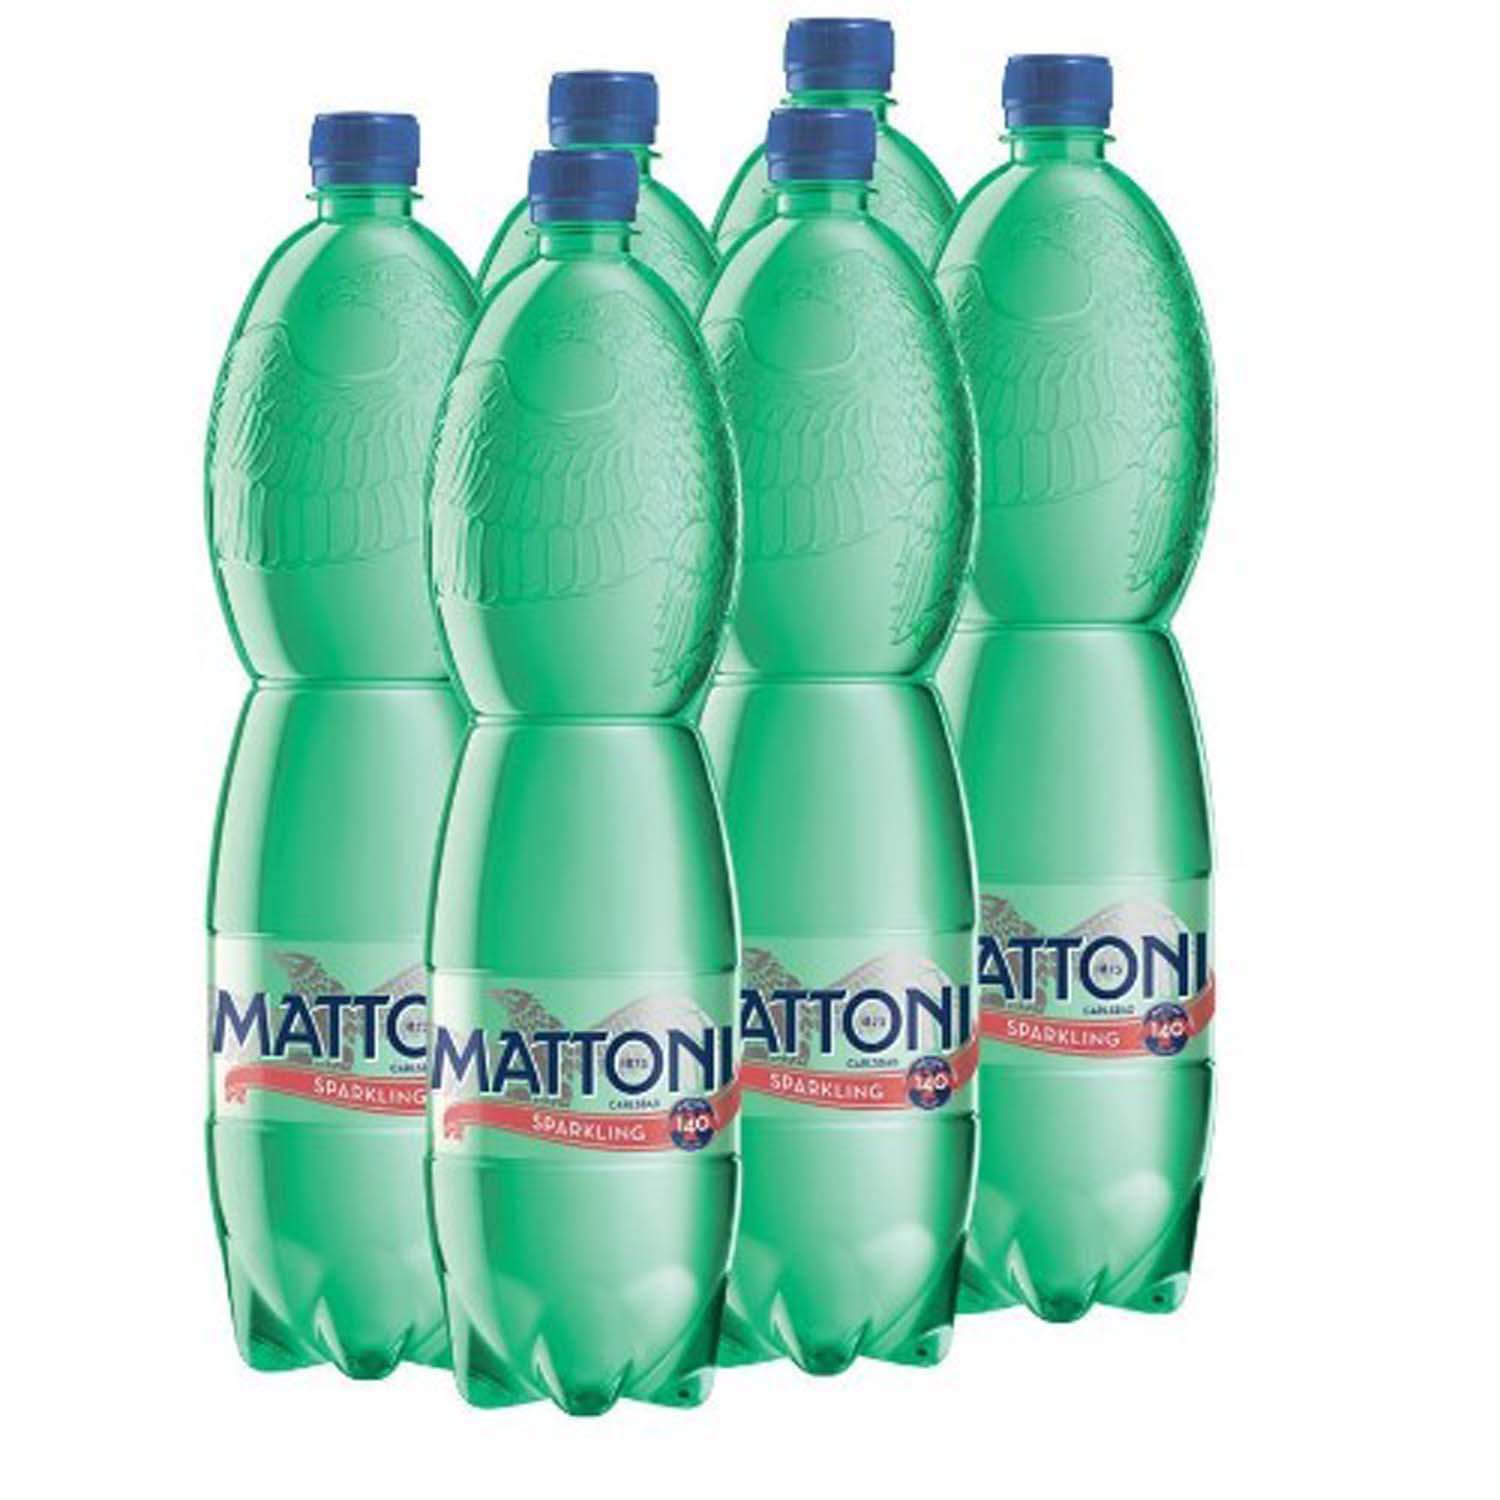 Вода минеральная Mattoni природная питьевая лечебно-столовая газированная 1.5 л 6 шт - фото 1